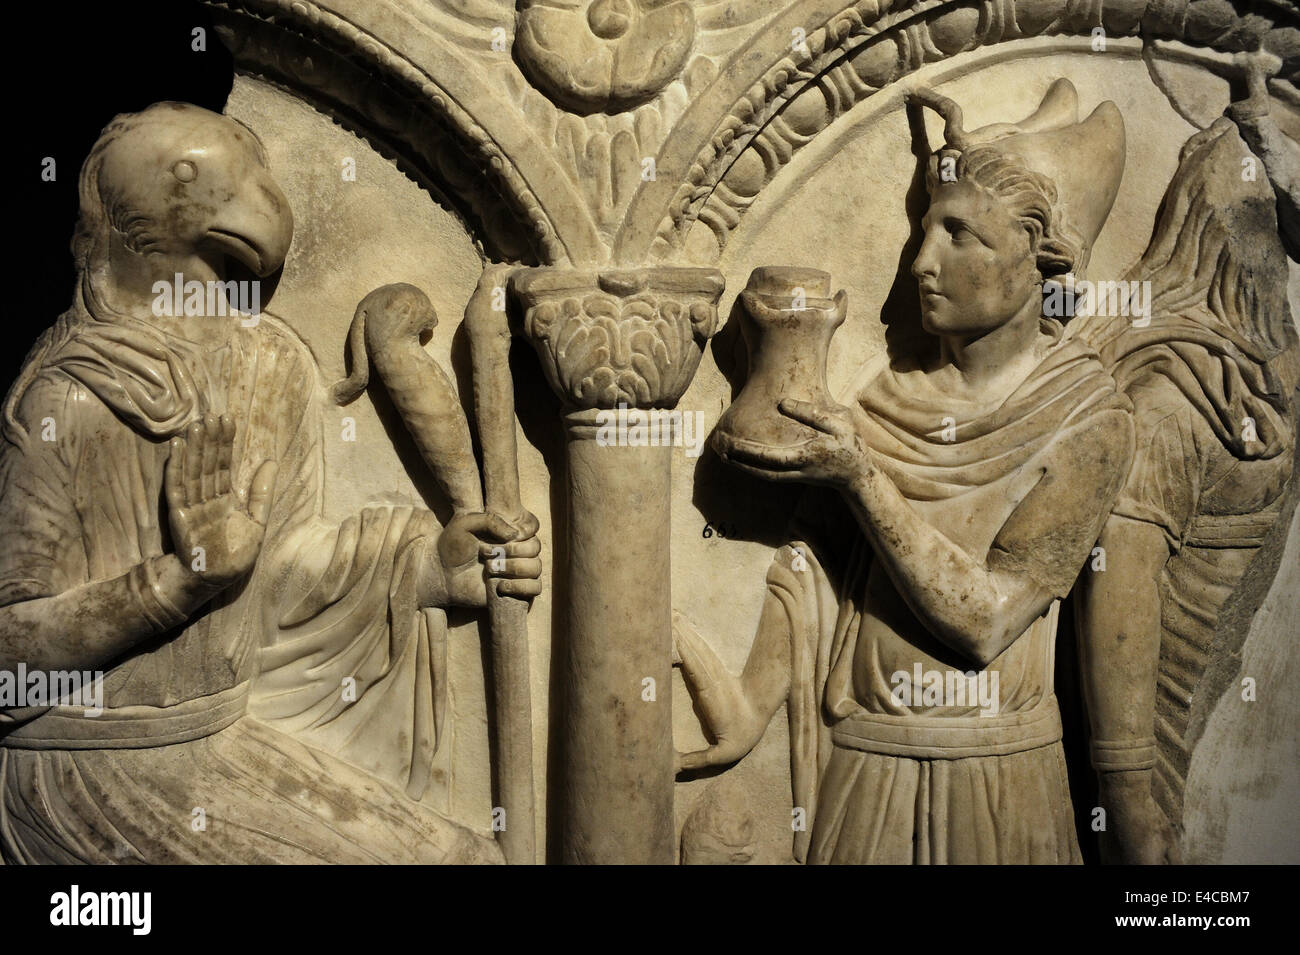 Fragment einer römischen Sarkophag Wanne. 2. Jahrhundert n. Chr. Marmor. Von Kreta (Griechenland). Archäologisches Museum. Istanbul. Turkei. Stockfoto